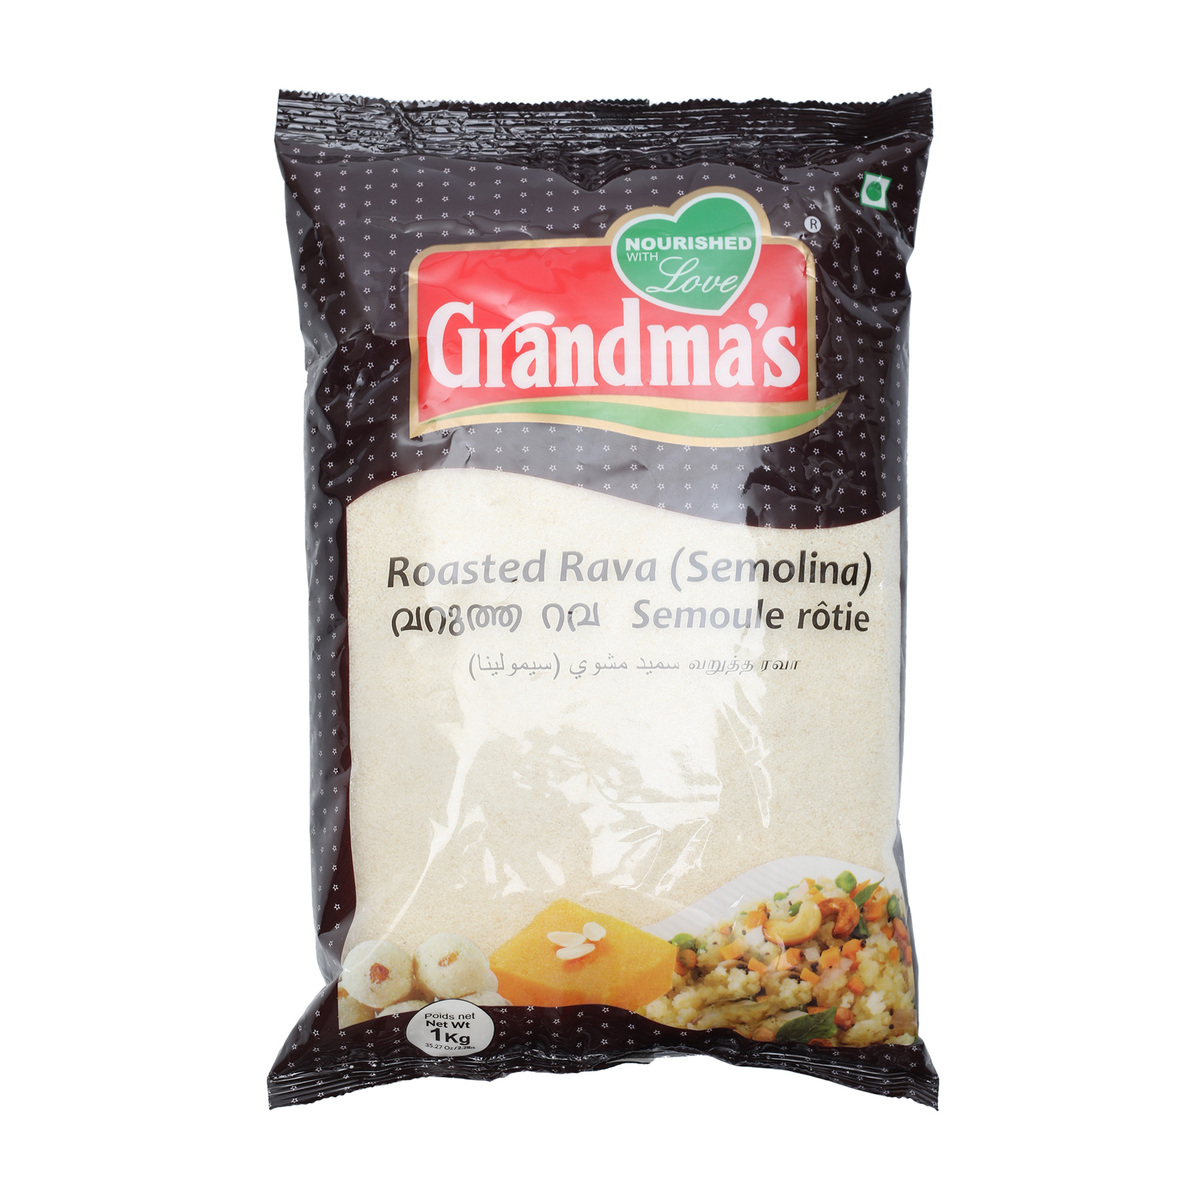 Grandmas Roasted Rava 1kg